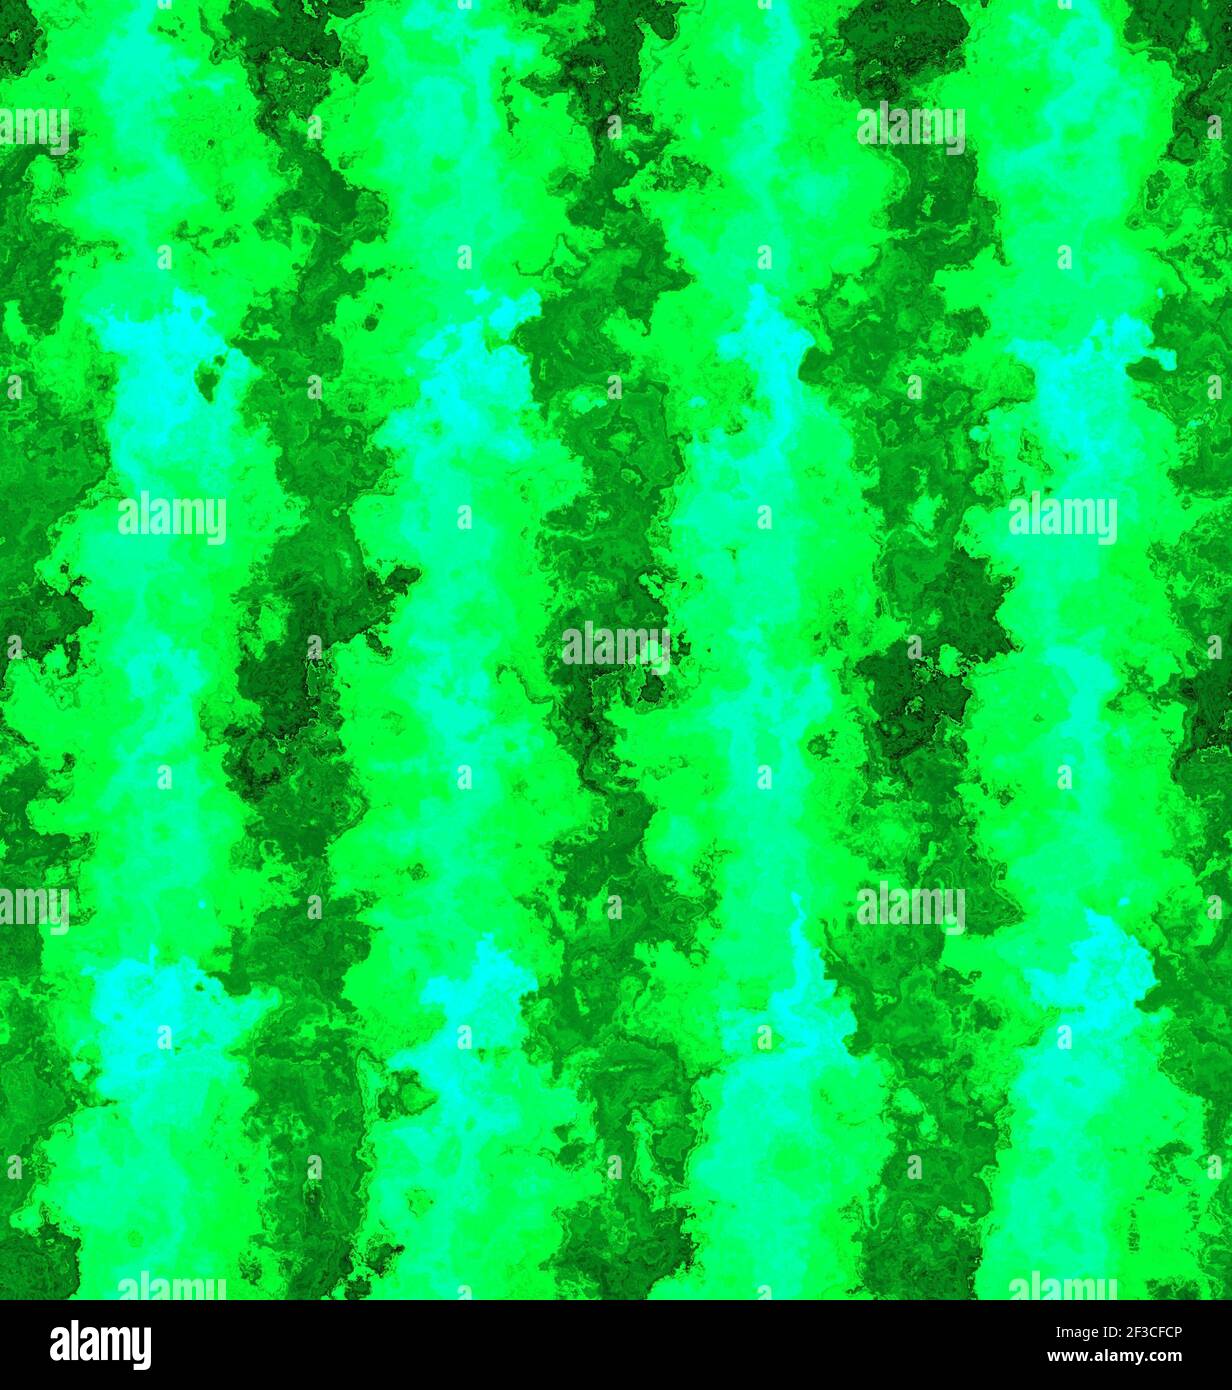 Ein abstraktes nahtloses Muster in verschwommenem öligen Grün und dunkel Farben Stockfoto